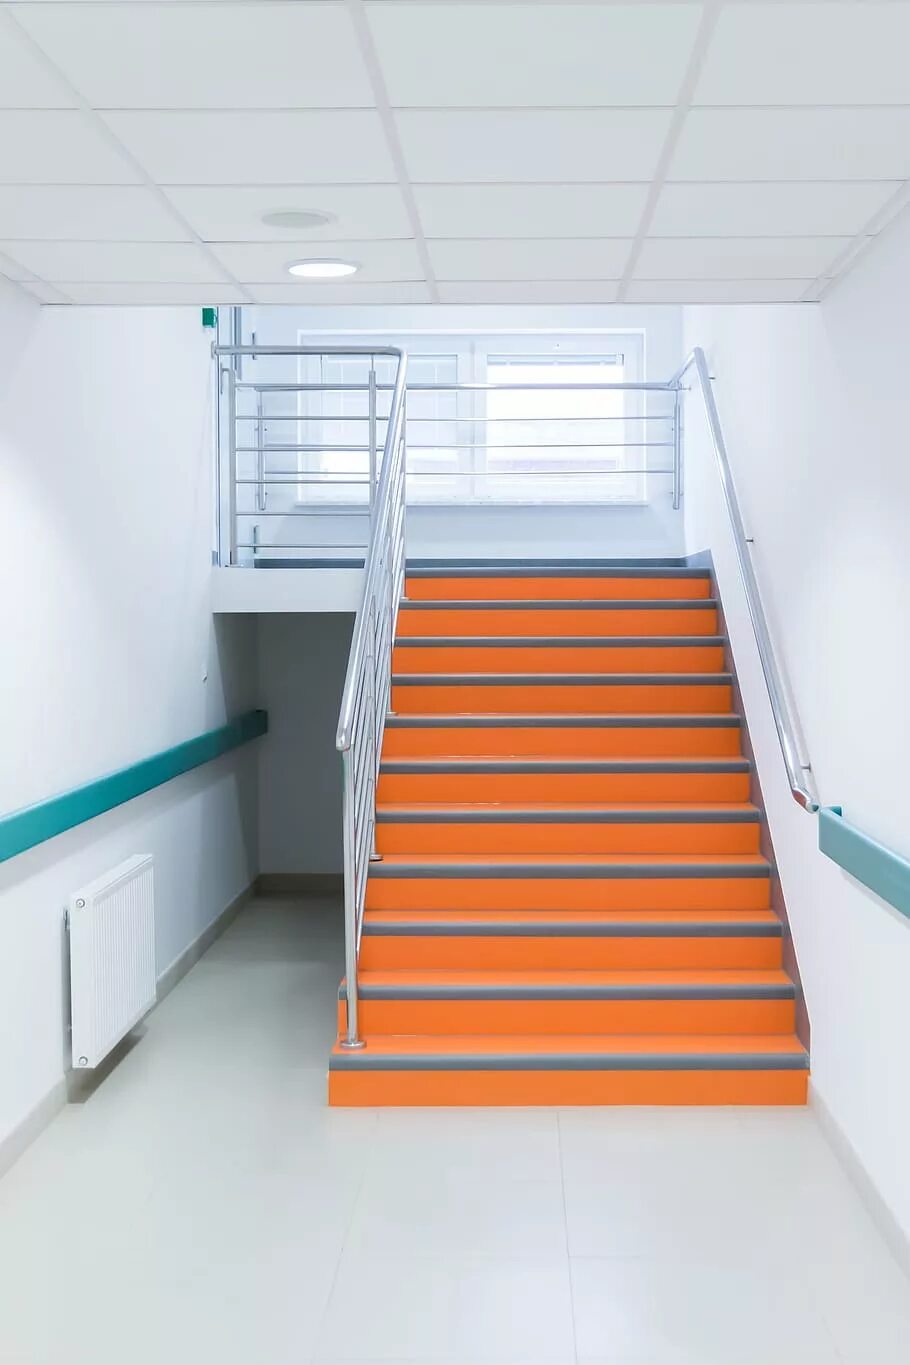 Второй этаж в школе. Ступеньки в больнице. Лестница в больнице. Лестница в поликлинике. Лестница в школе.